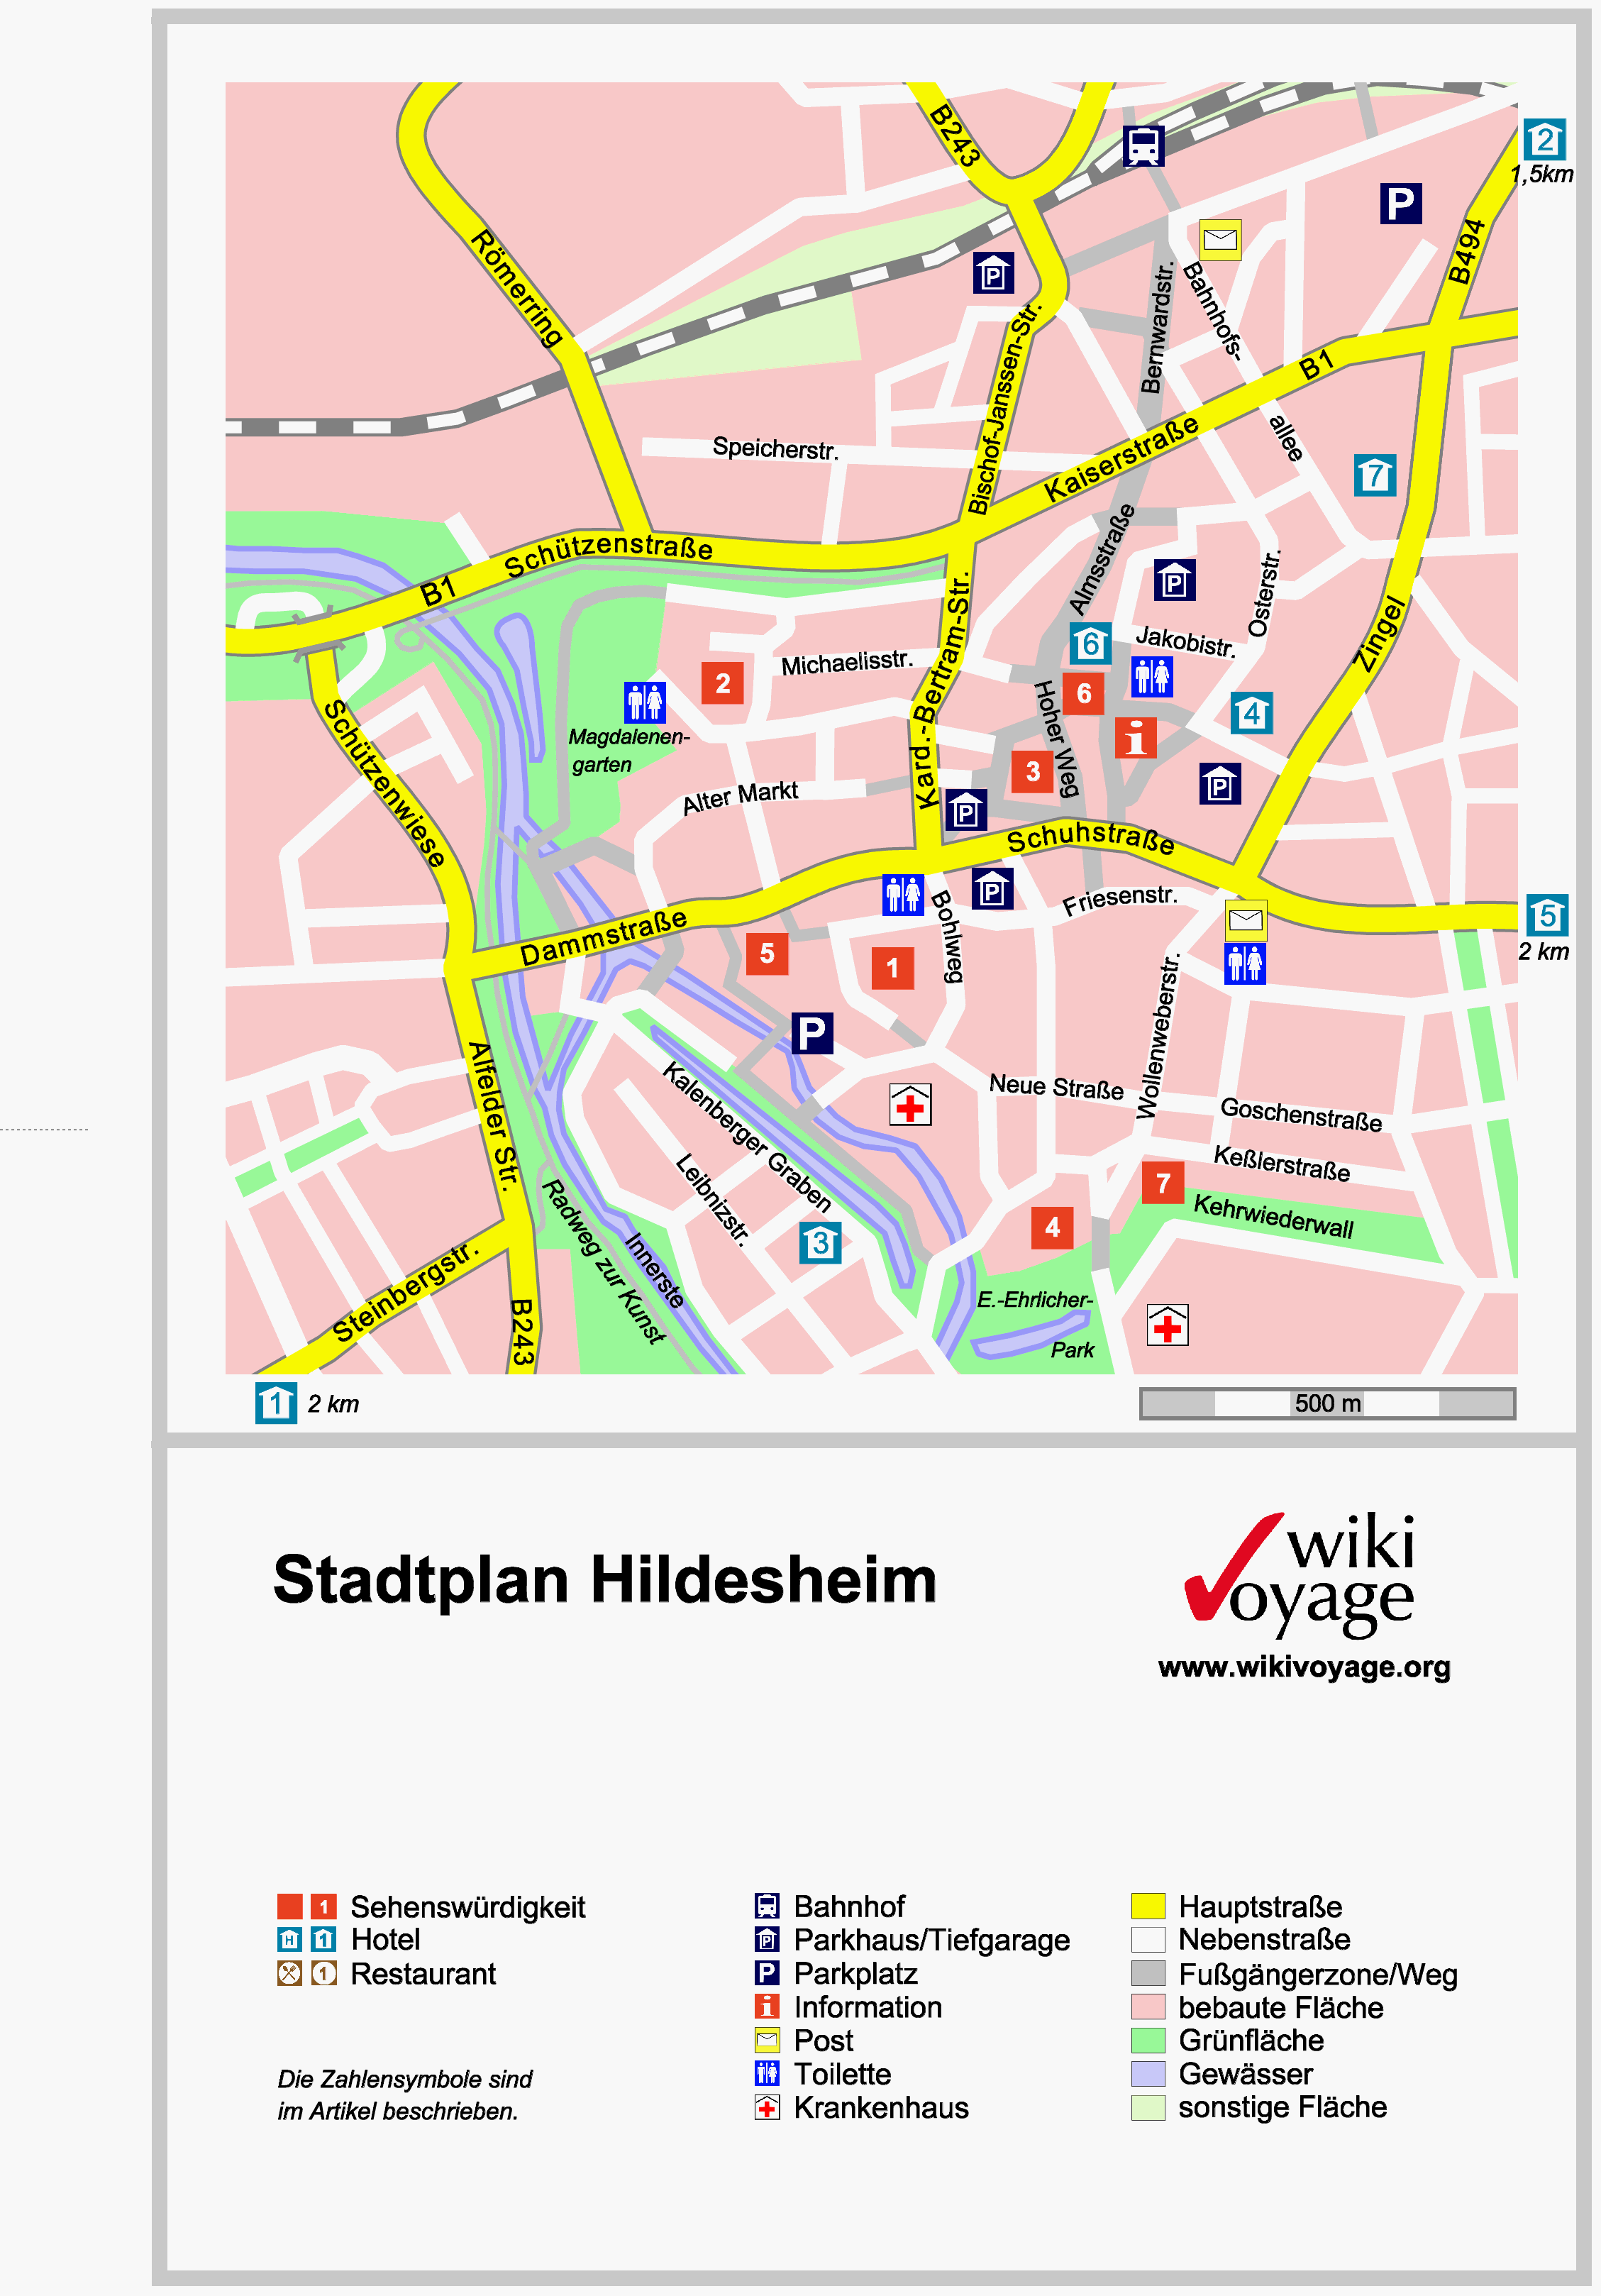 Hildesheim touristique plan